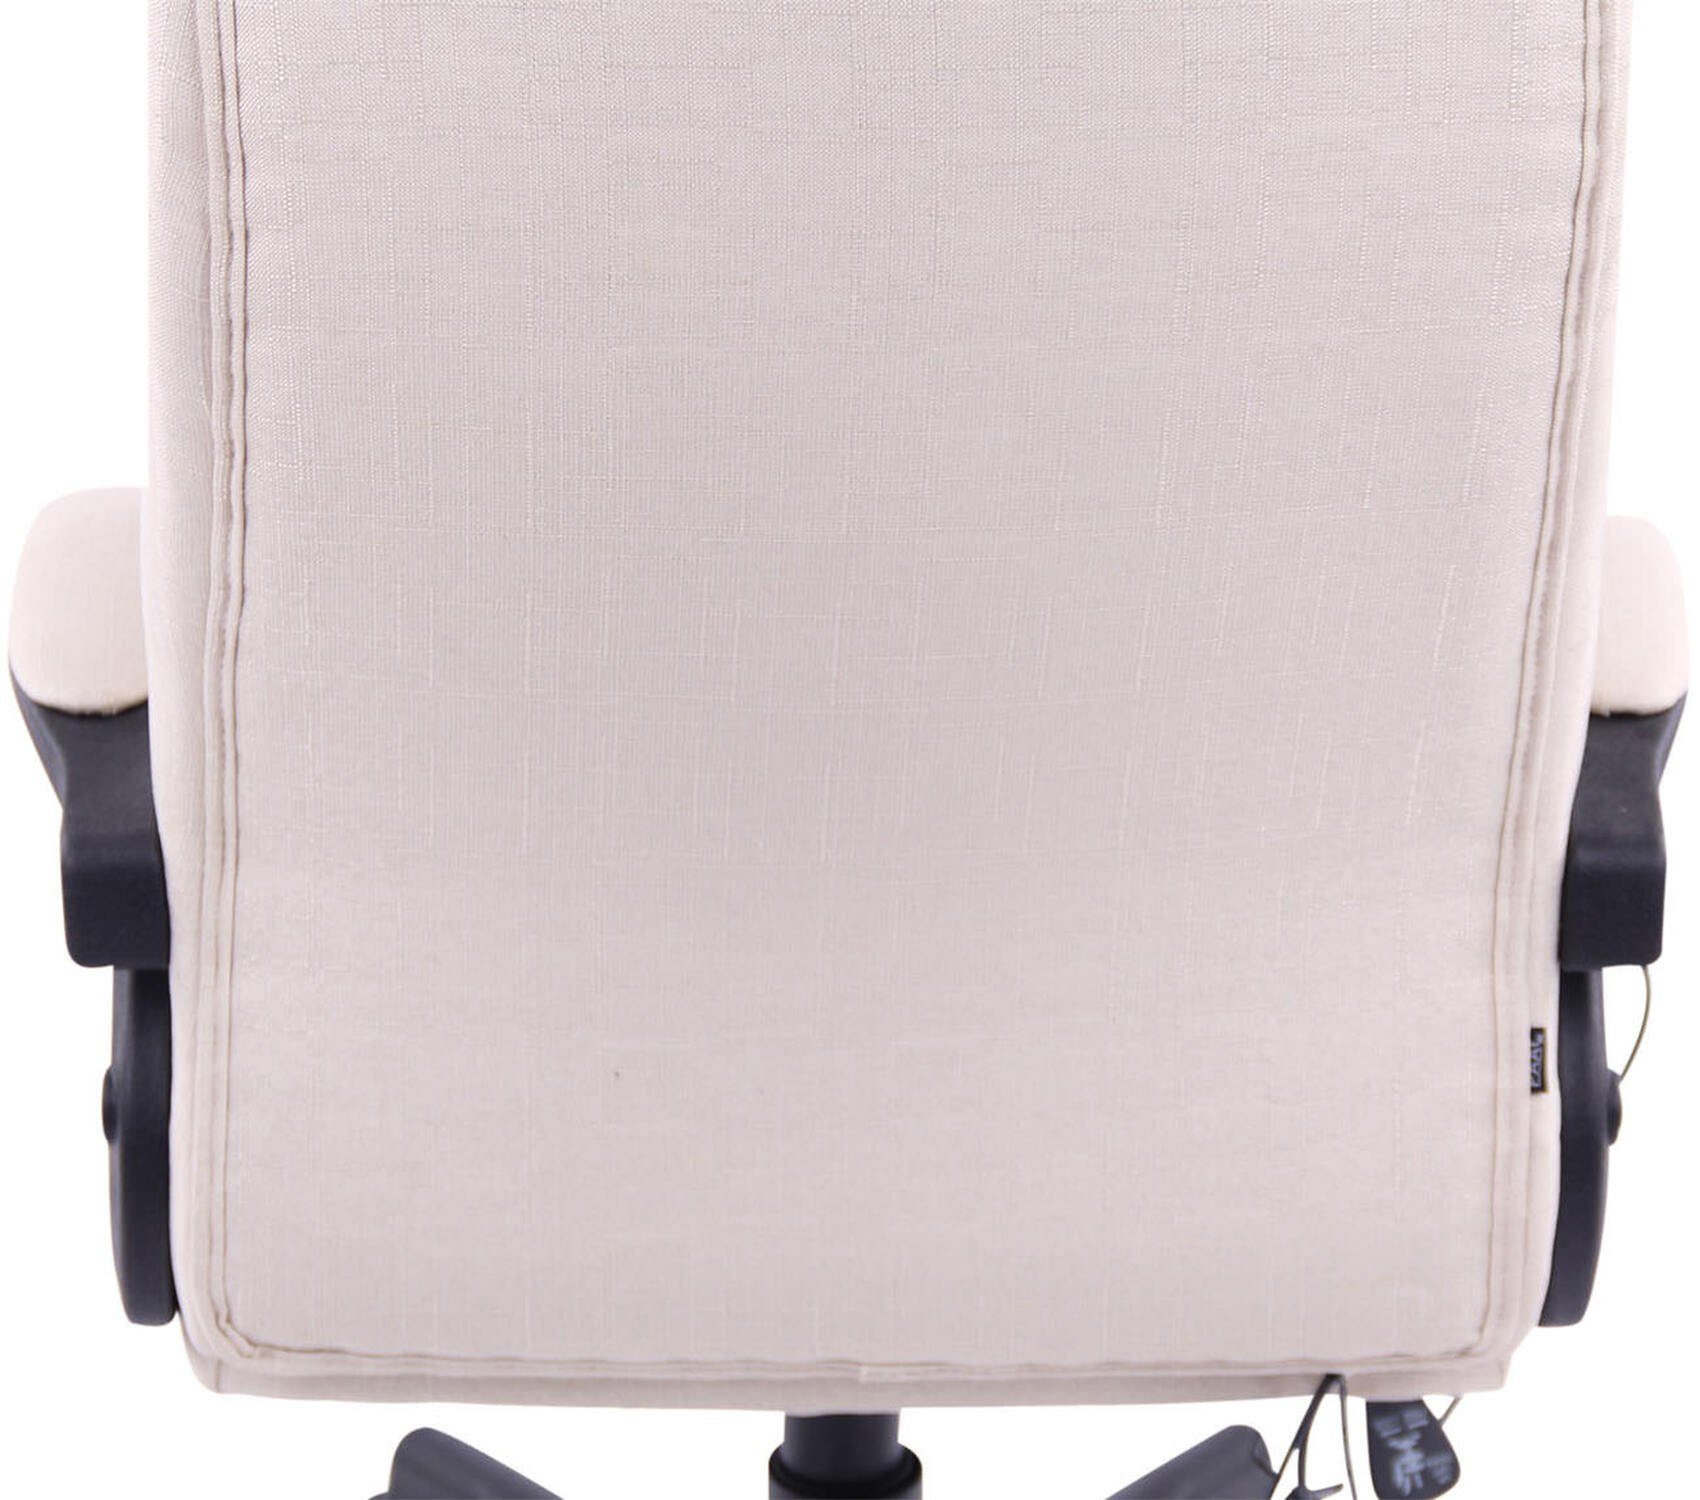 TPFLiving Bürostuhl Sportino Bürostuhl Rückenlehne 360° - creme Kunststoff Stoff drehbar bequeme Drehstuhl, schwarz Stoff XXL), - (Schreibtischstuhl, Chefsessel, Sitz: - höhenverstellbar - Gestell